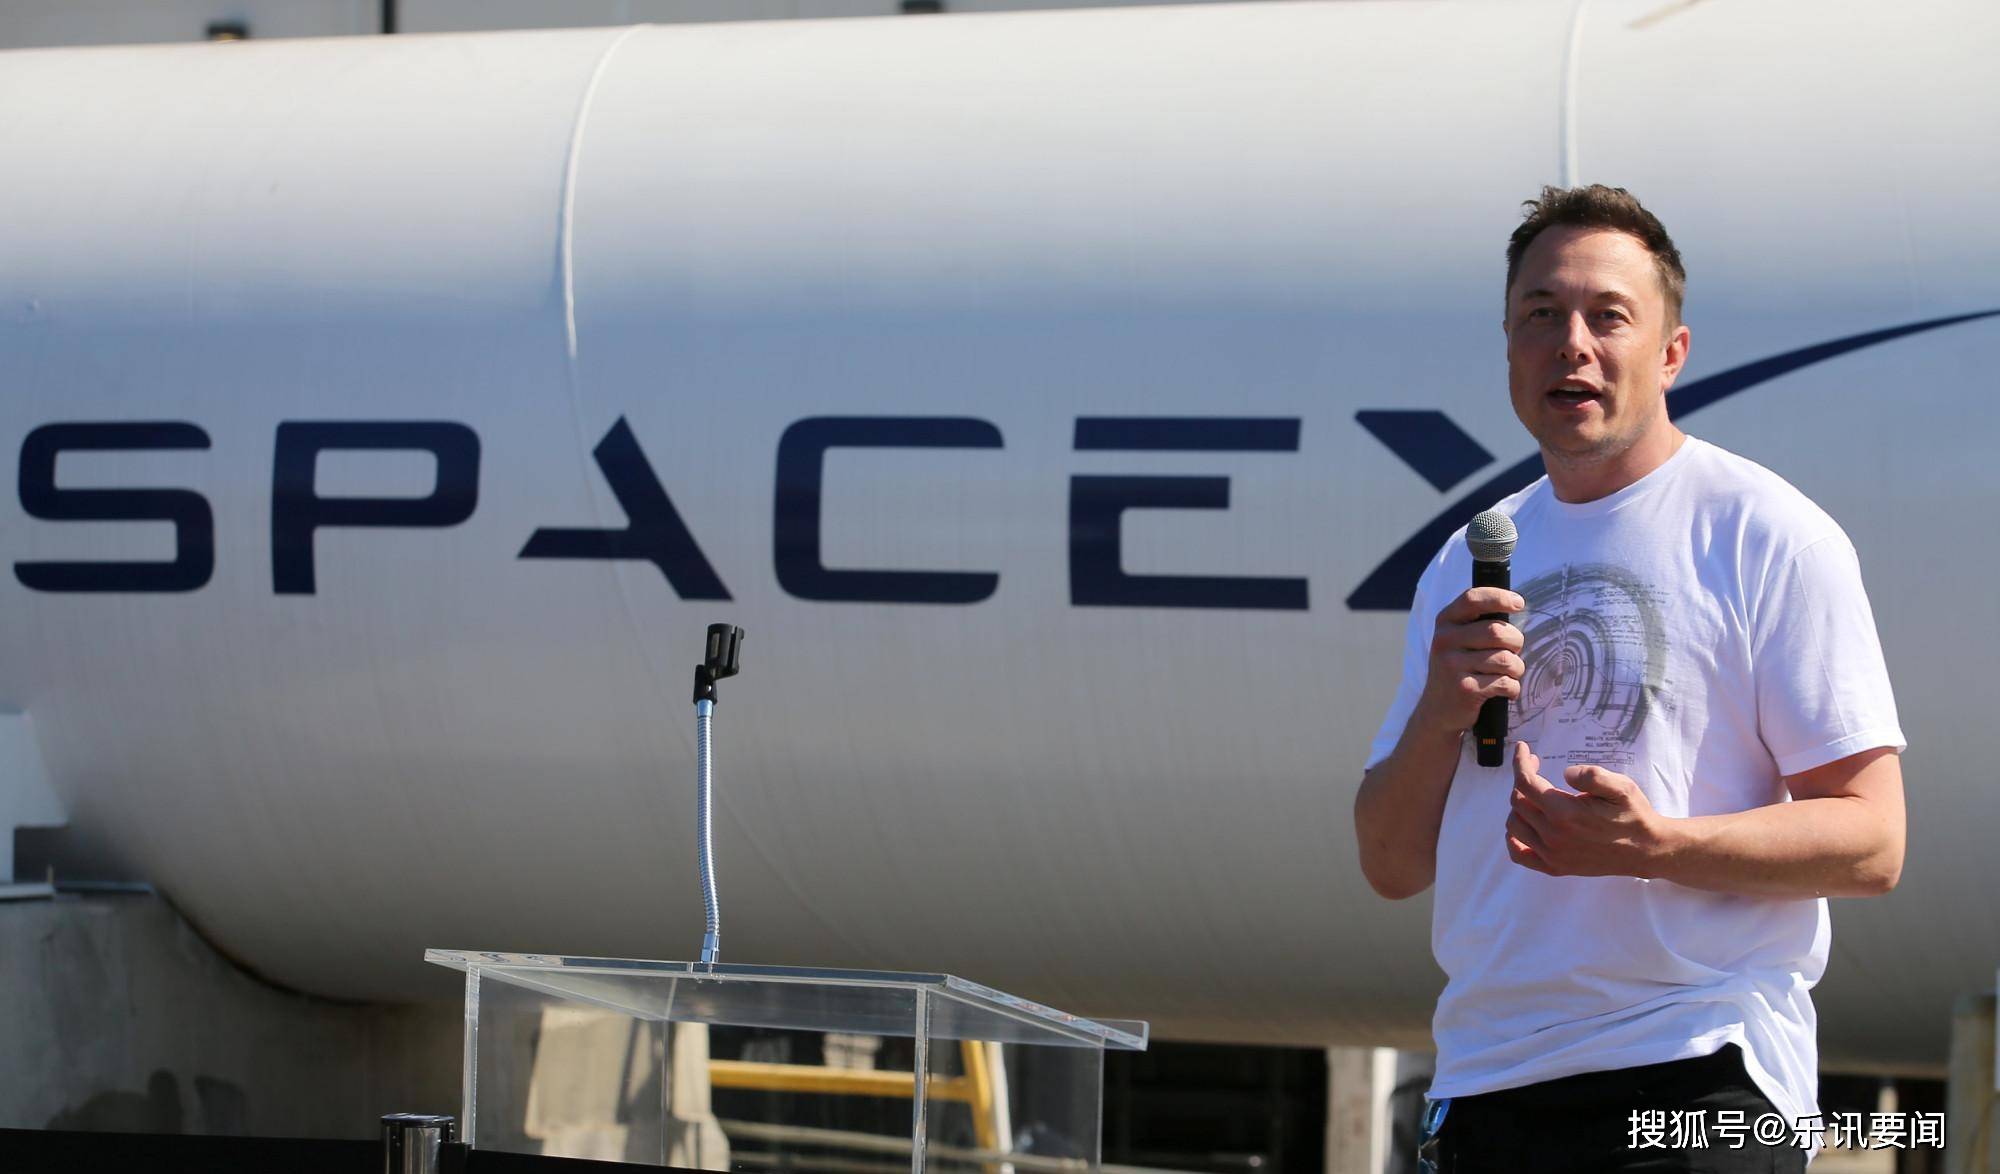 图文解读:1月20日SpaceX猎鹰9号火箭发射运载星链卫星_一级助推器